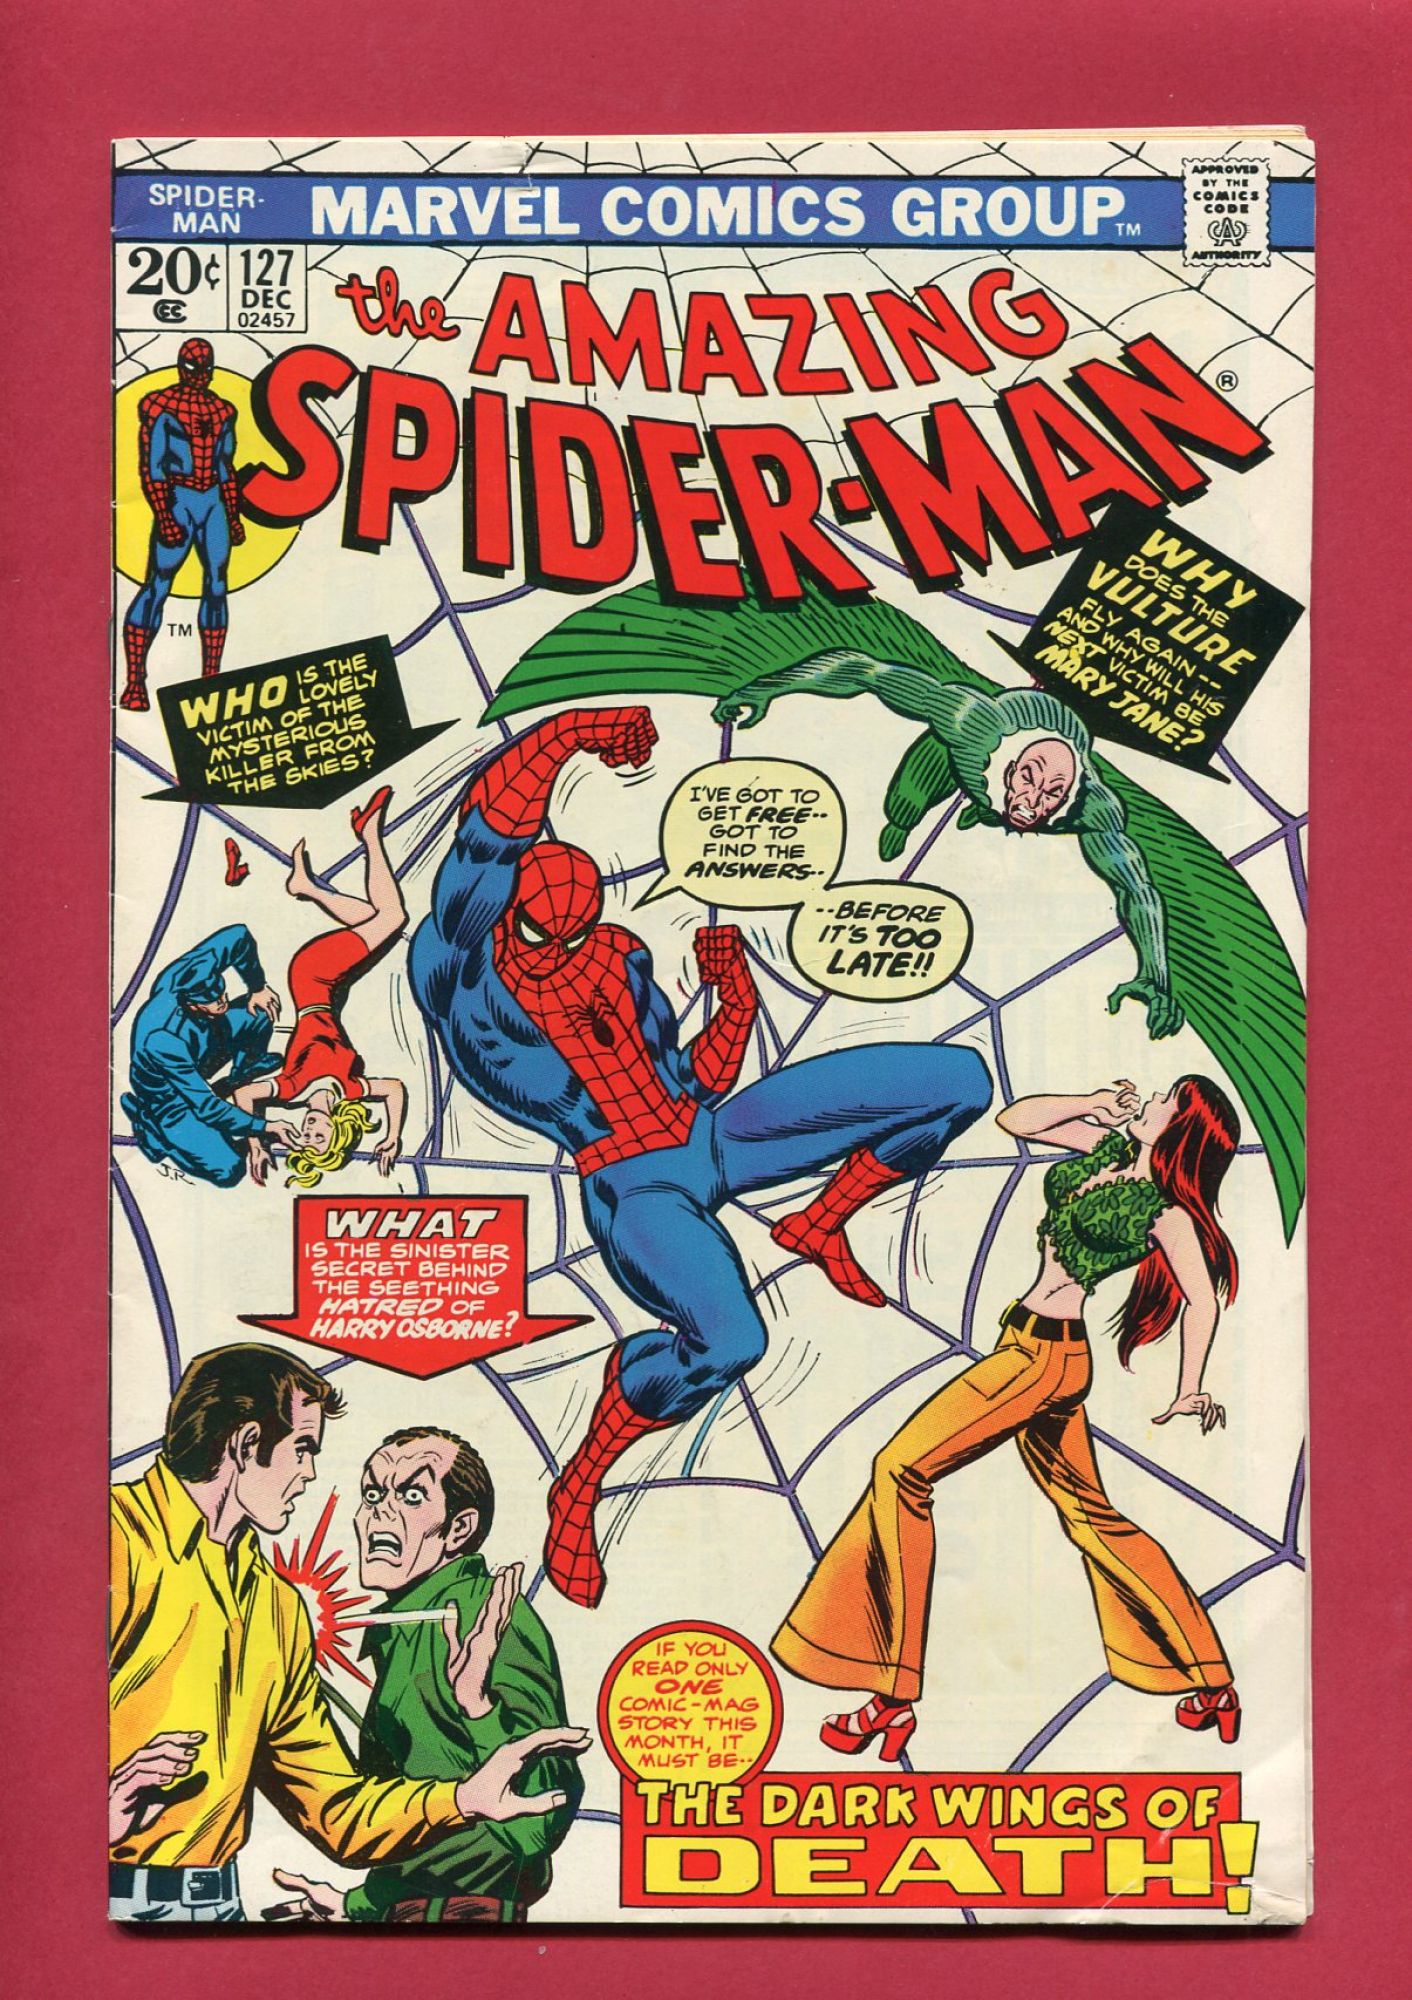 Amazing Spider-Man #127, Dec 1973, 5.0 VG/FN